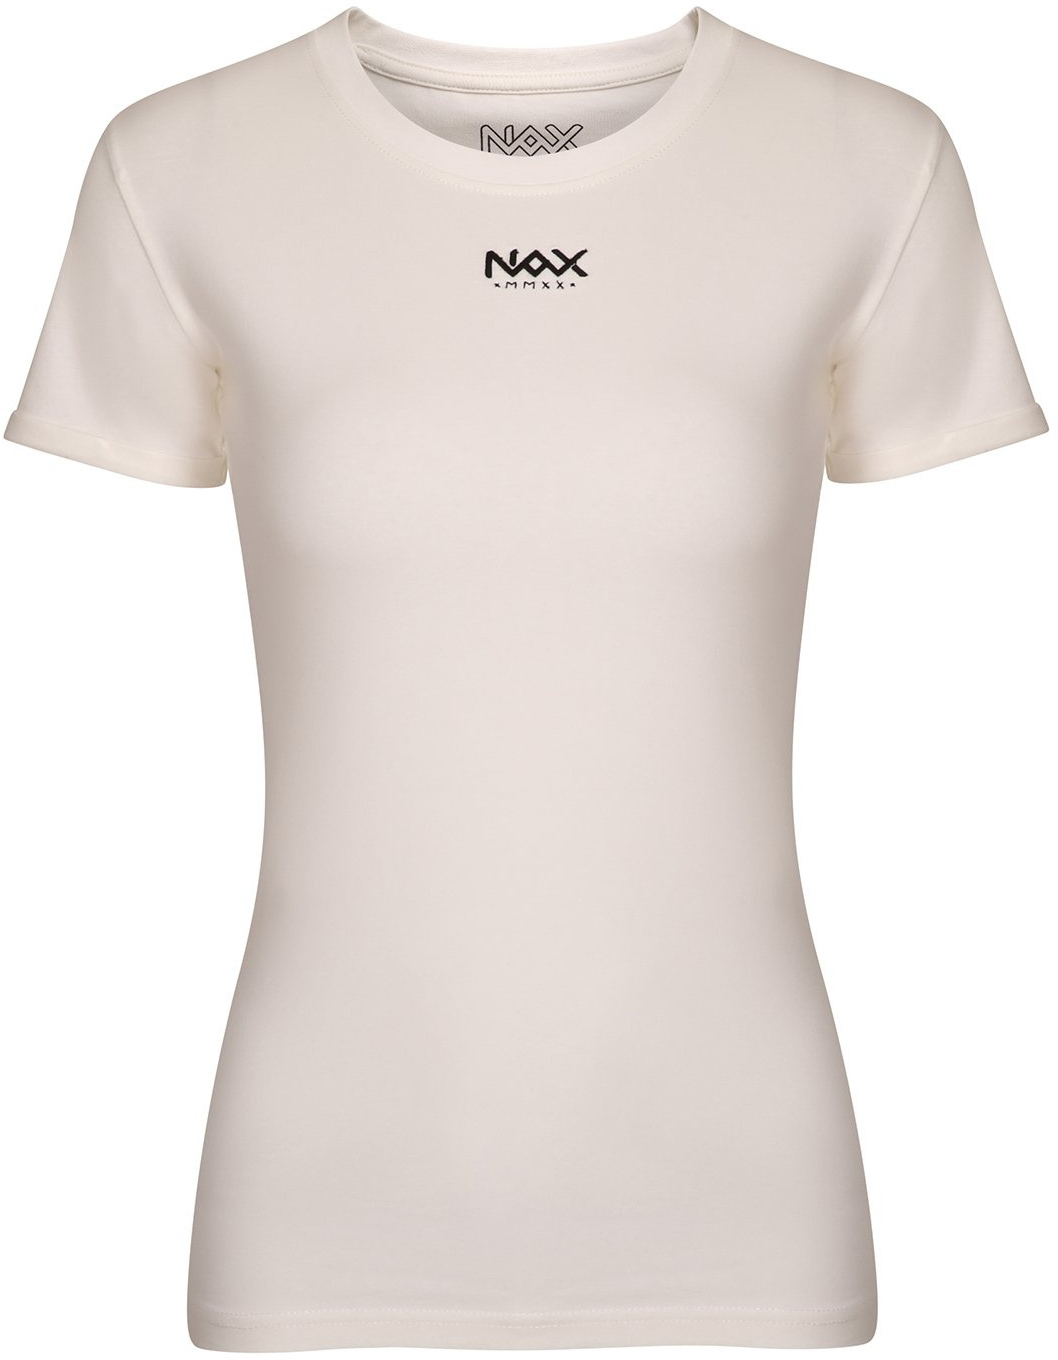 Dámské triko Nax Navafa|XL